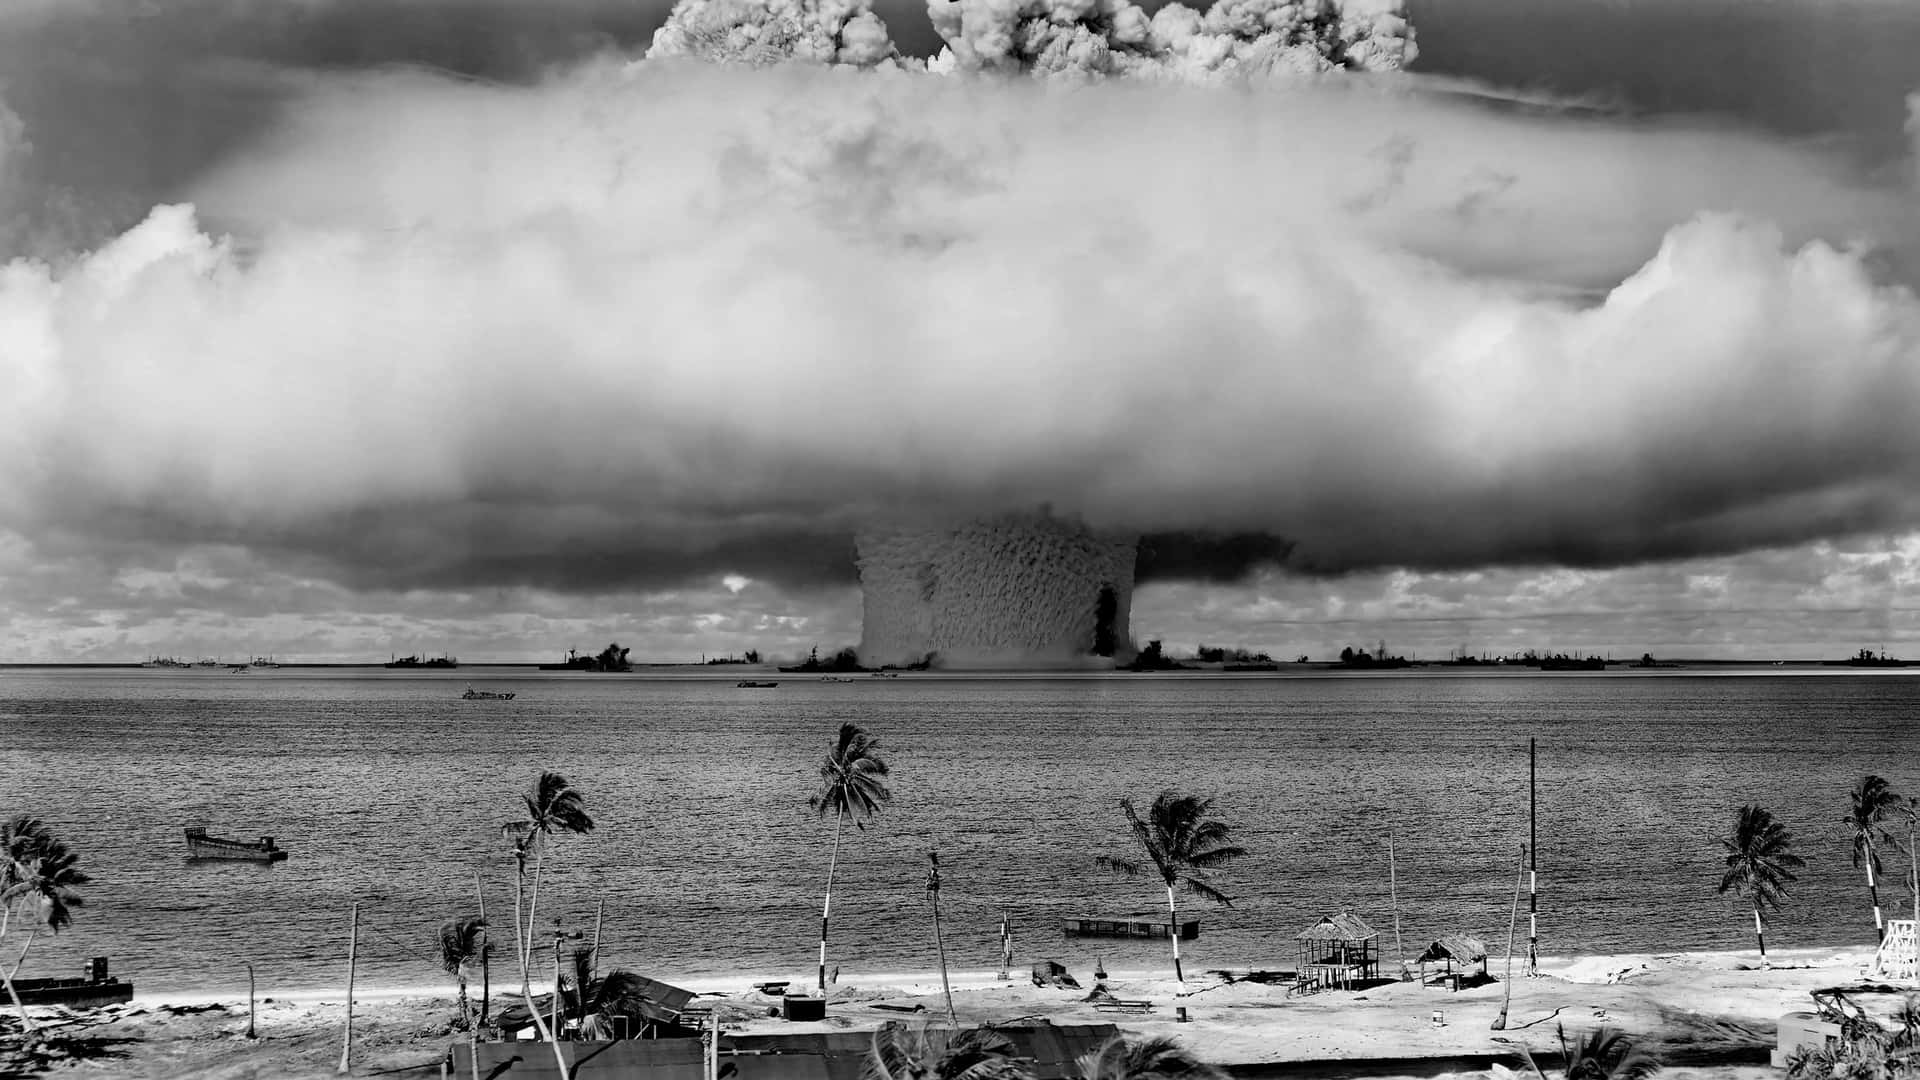 Bildvon Den Ikonischen Atomtests Auf Bikini Atoll